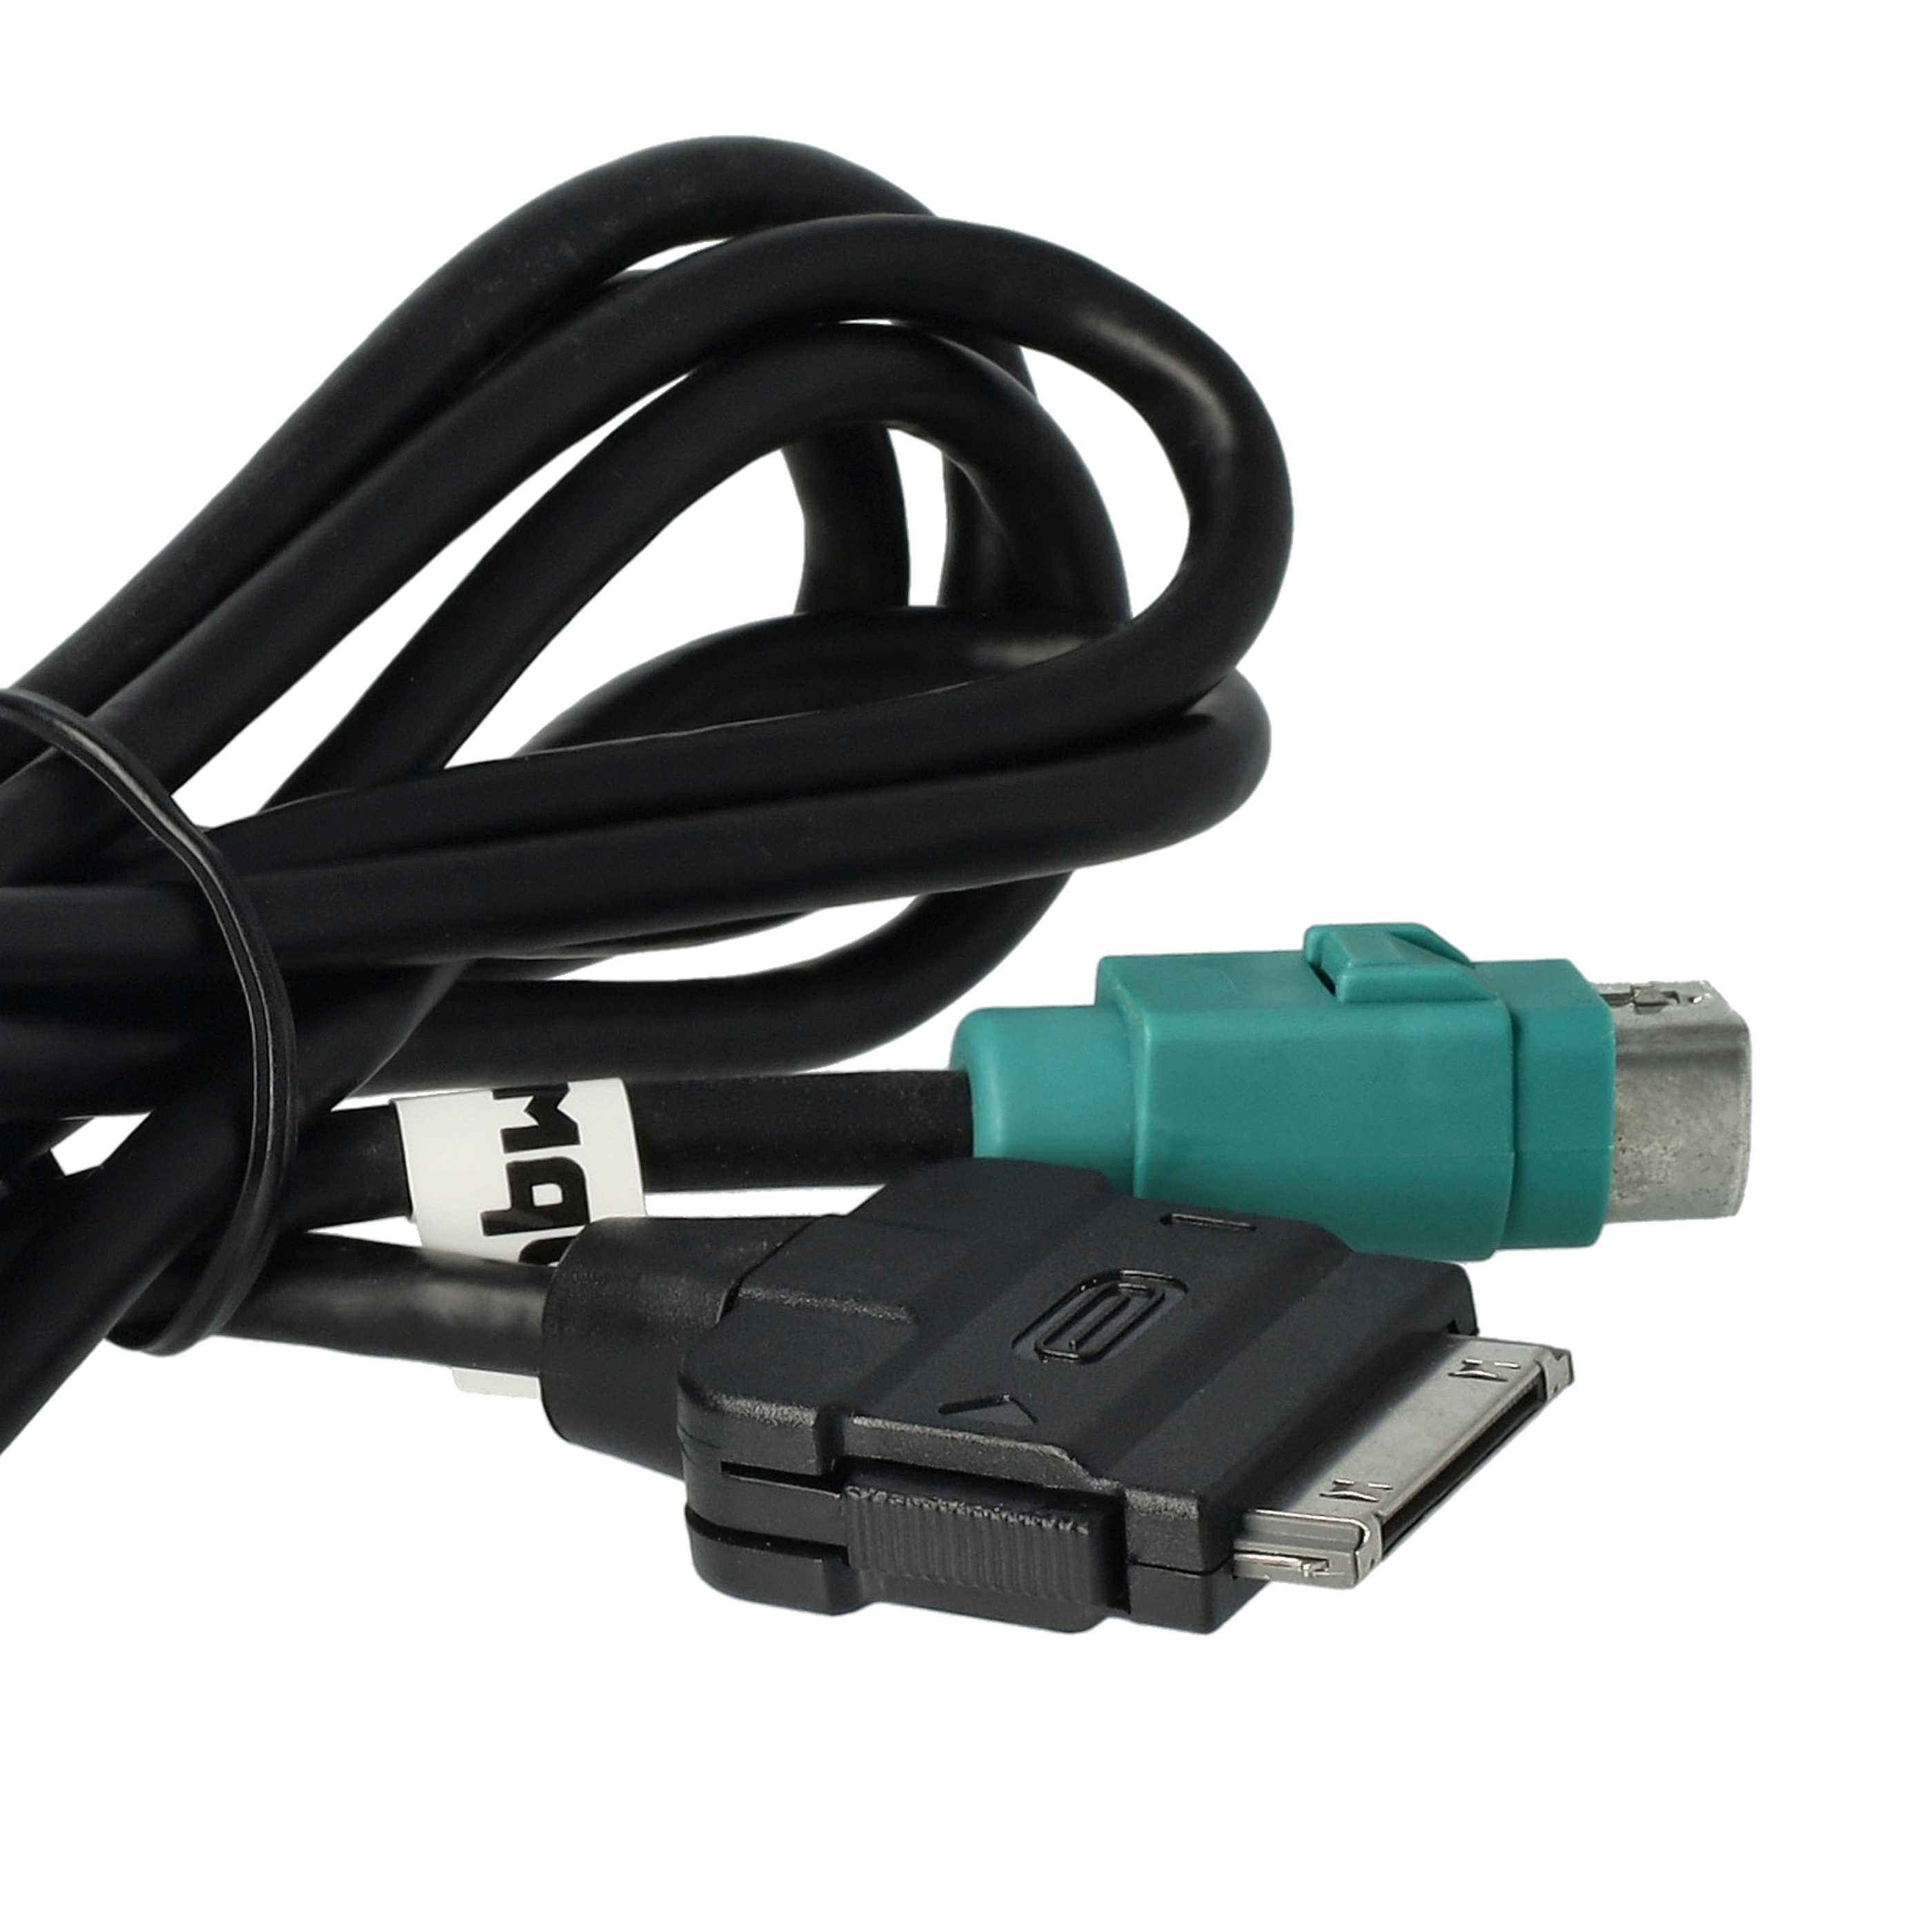 Audio Kabel als Ersatz für Alpine KCE-422i für Alpine Auto, Fahrzeug - 100 cm lang